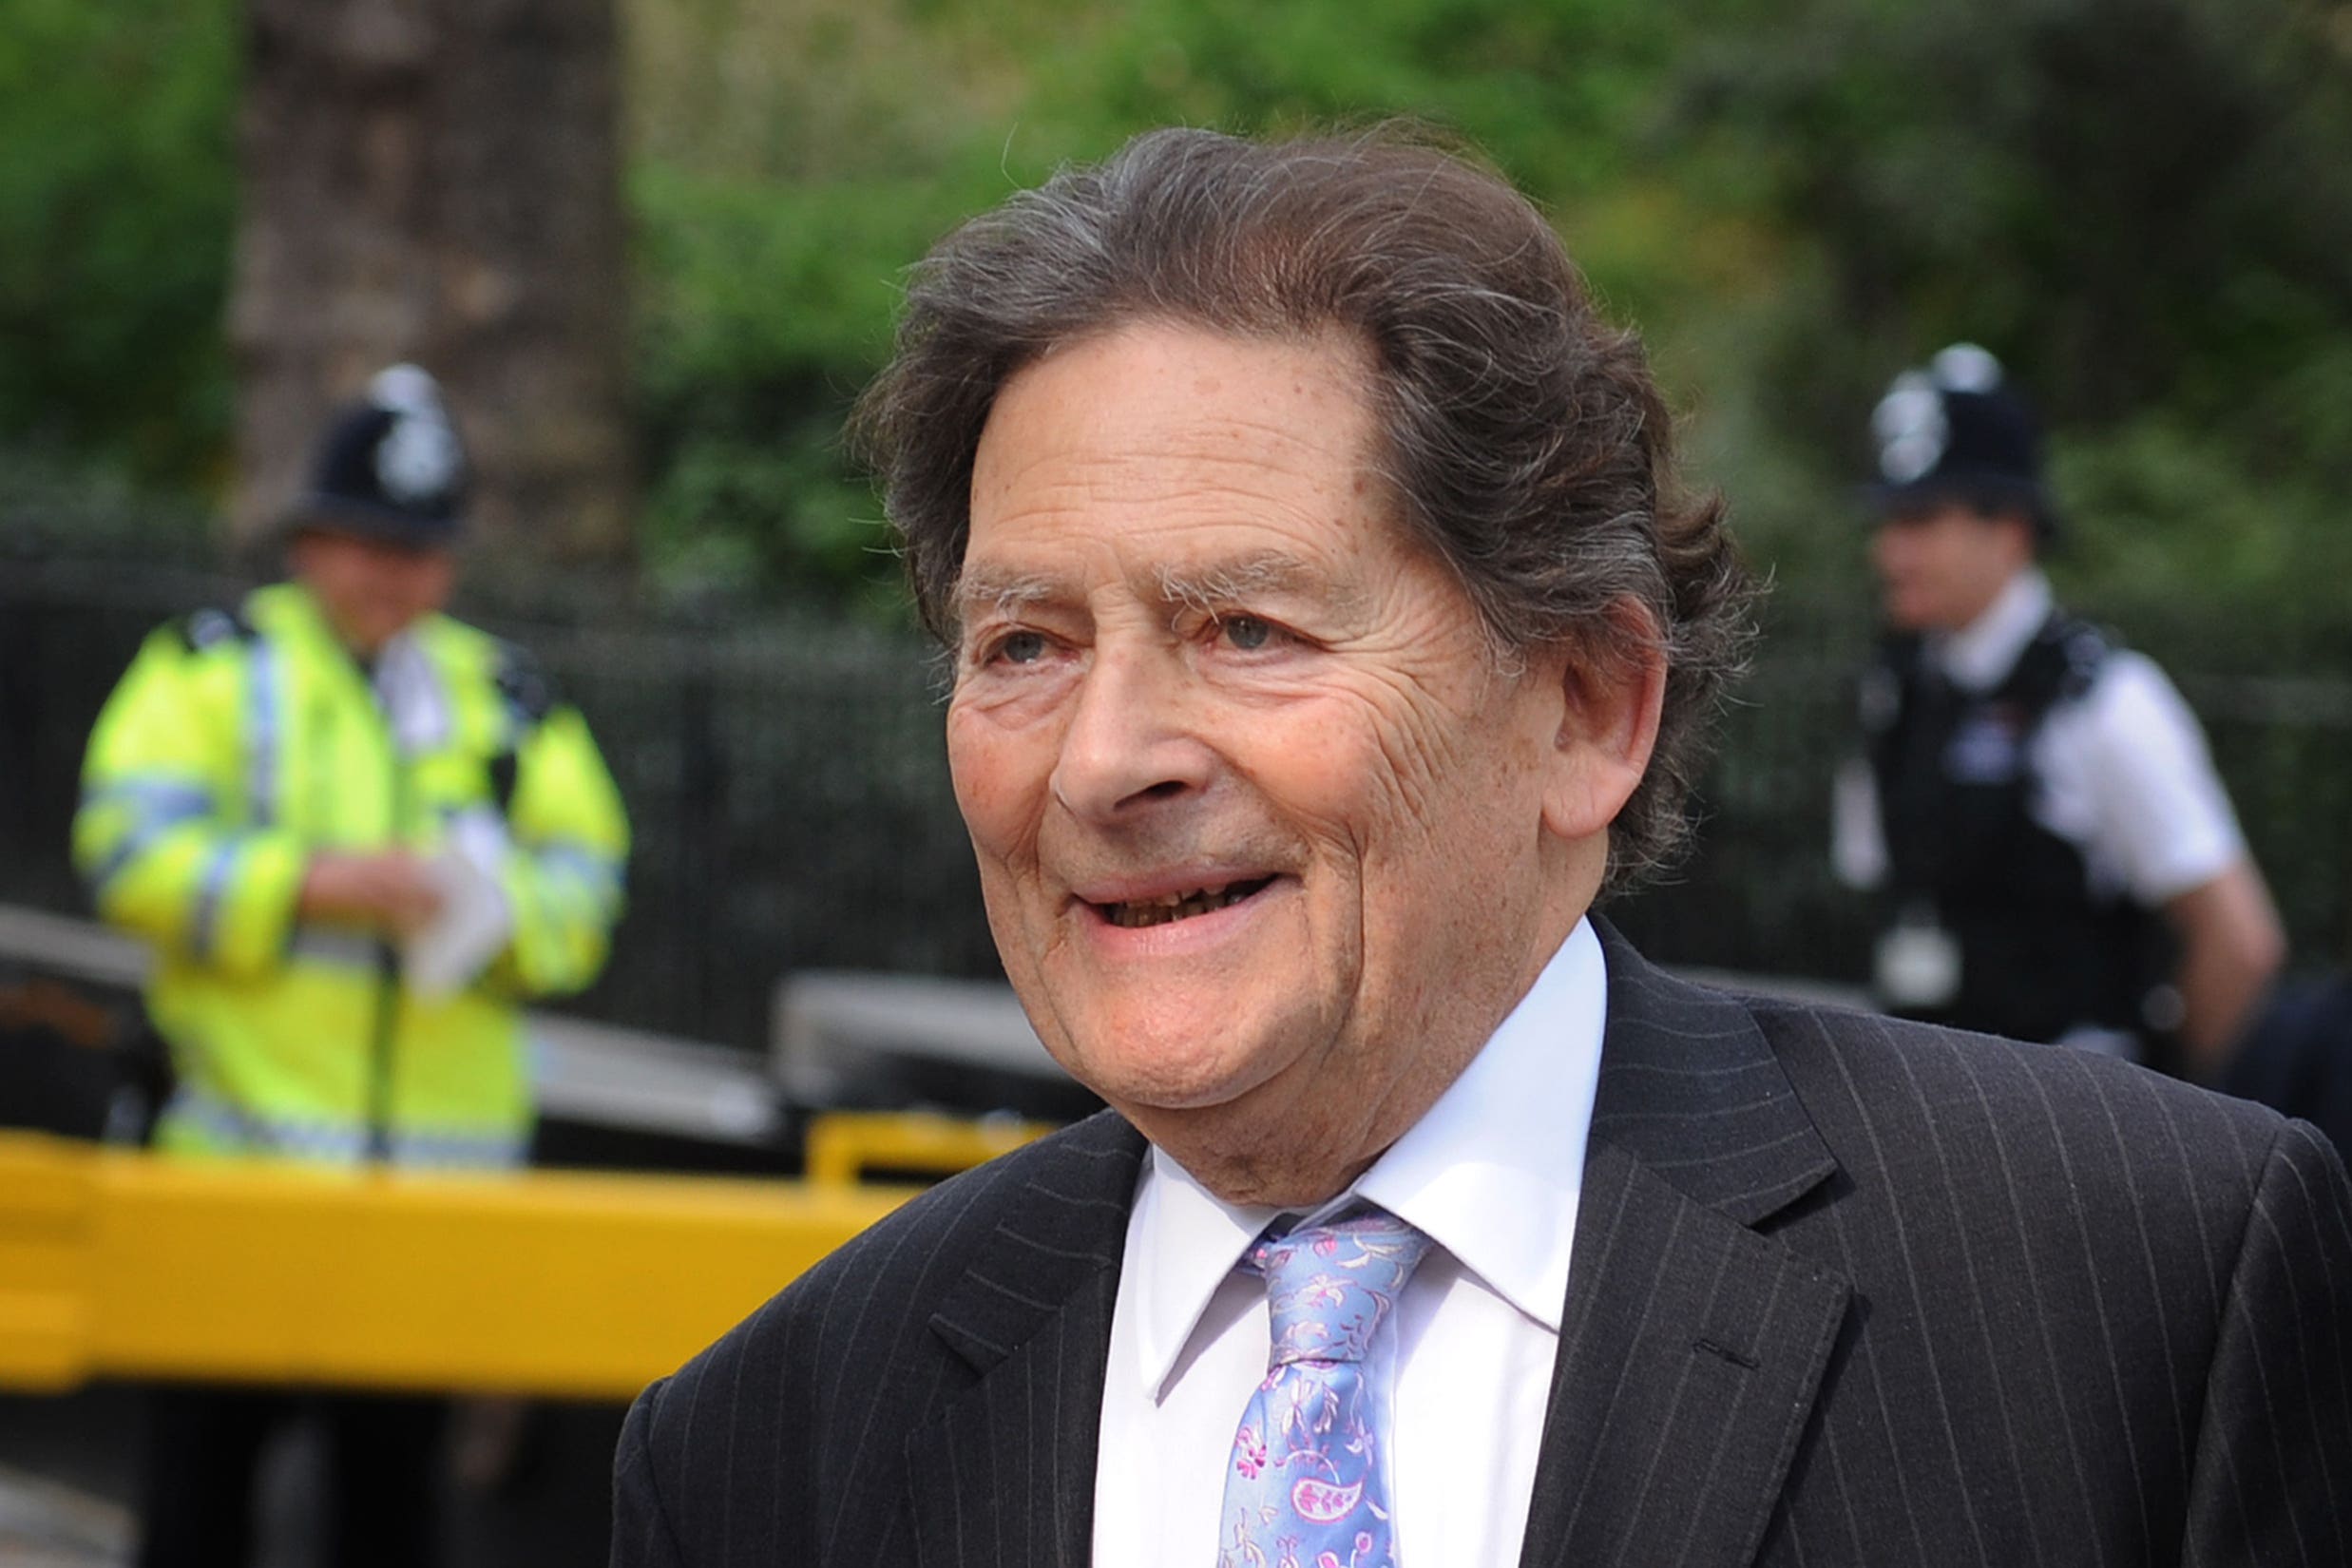 Nigel Lawson in 2013